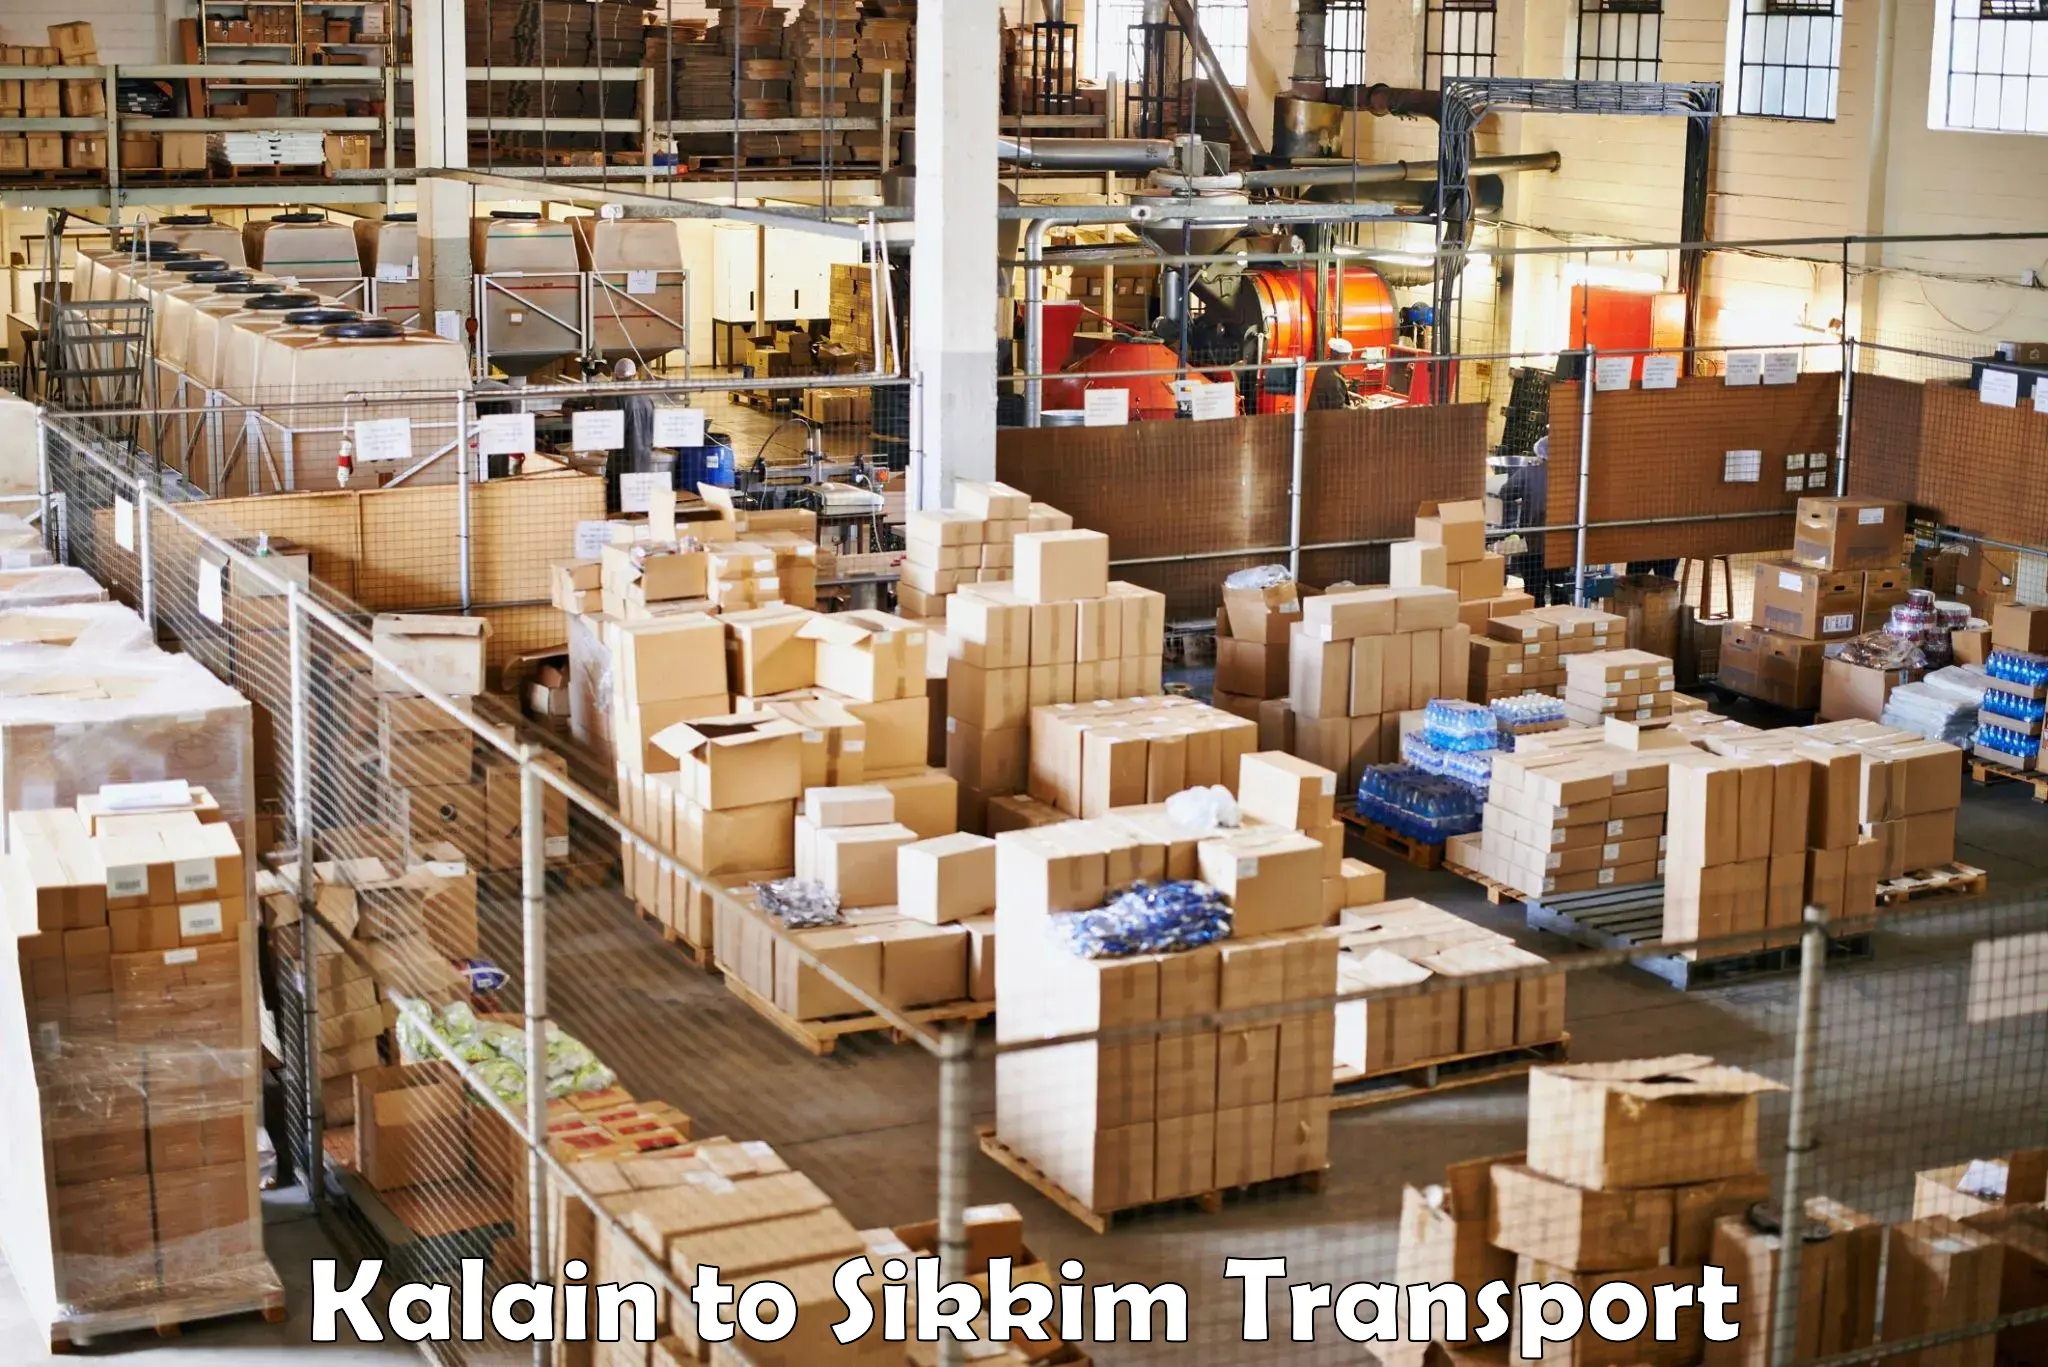 Container transport service Kalain to Mangan